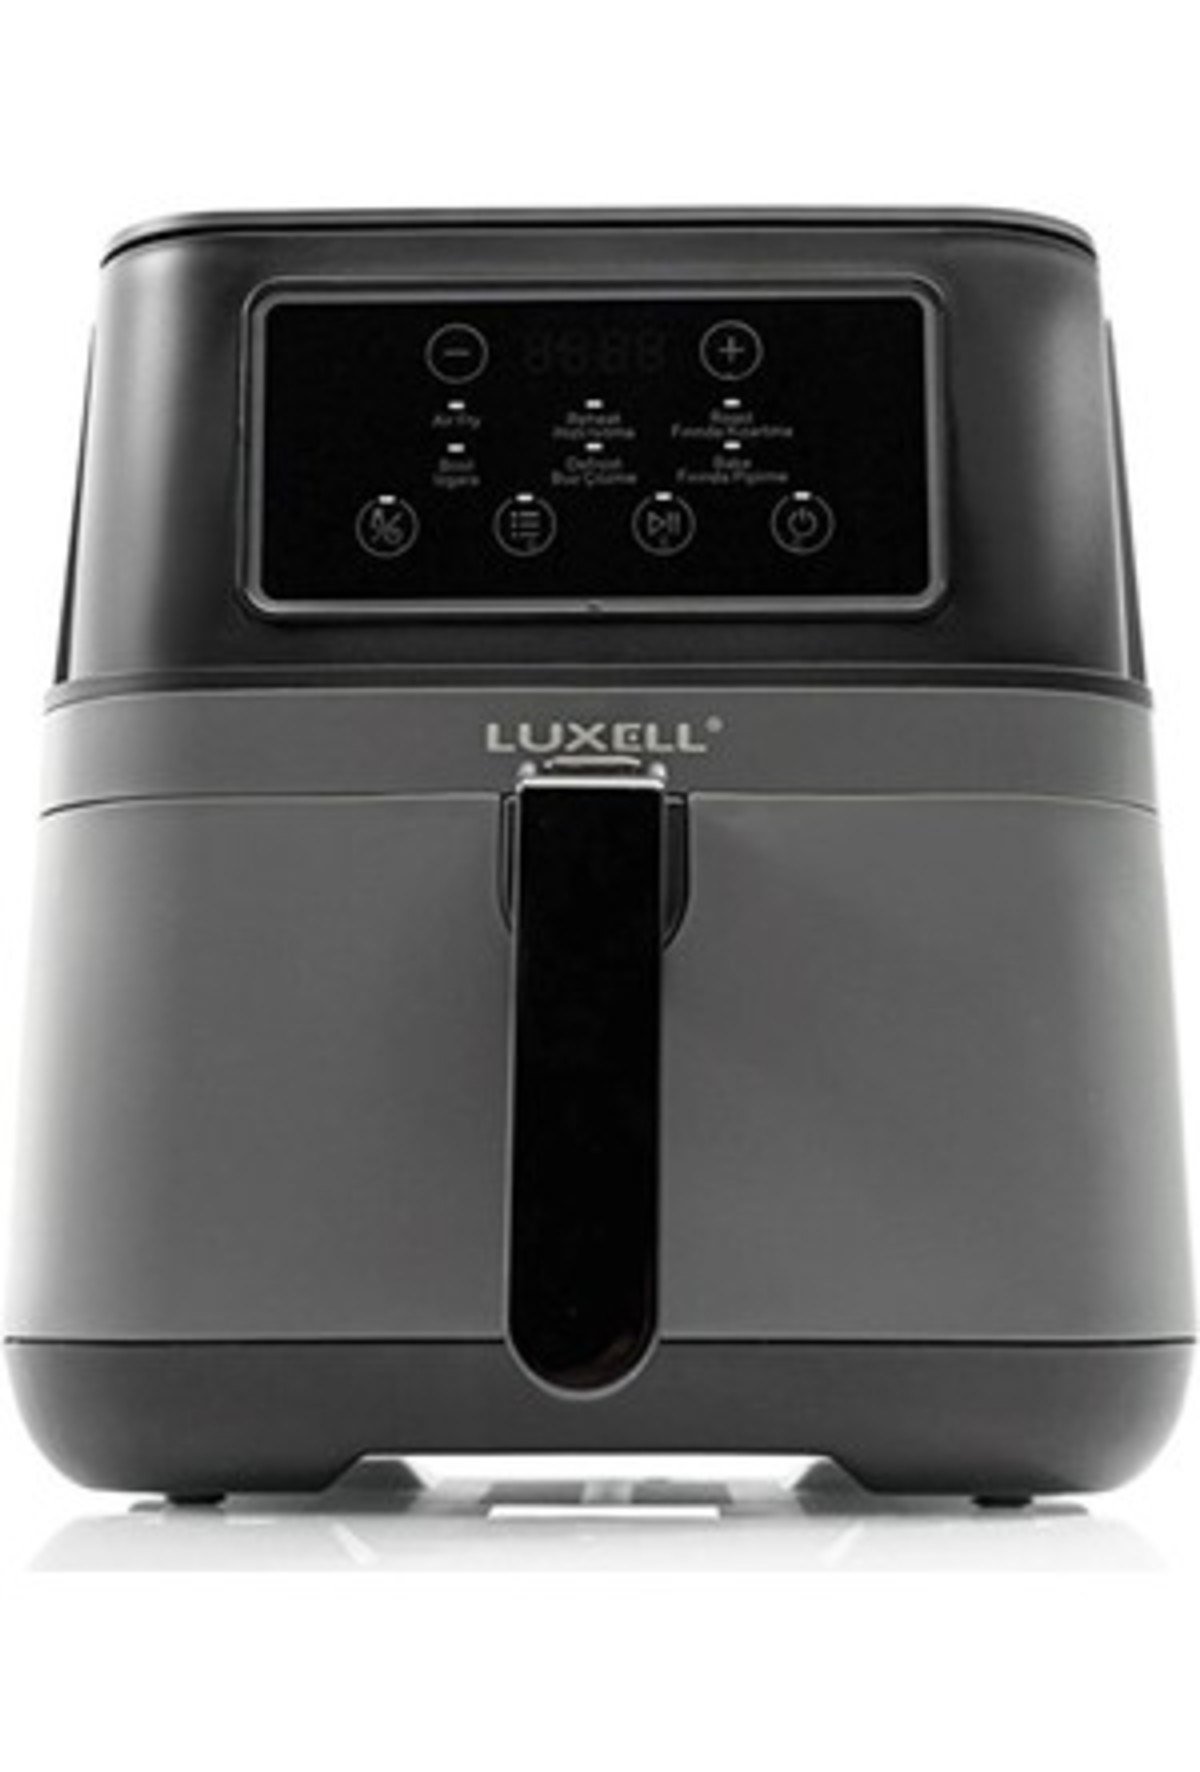 Luxell Fastfryer Dijital Sıcak Hava Fritözü 7,5 Lt Lxaf-01